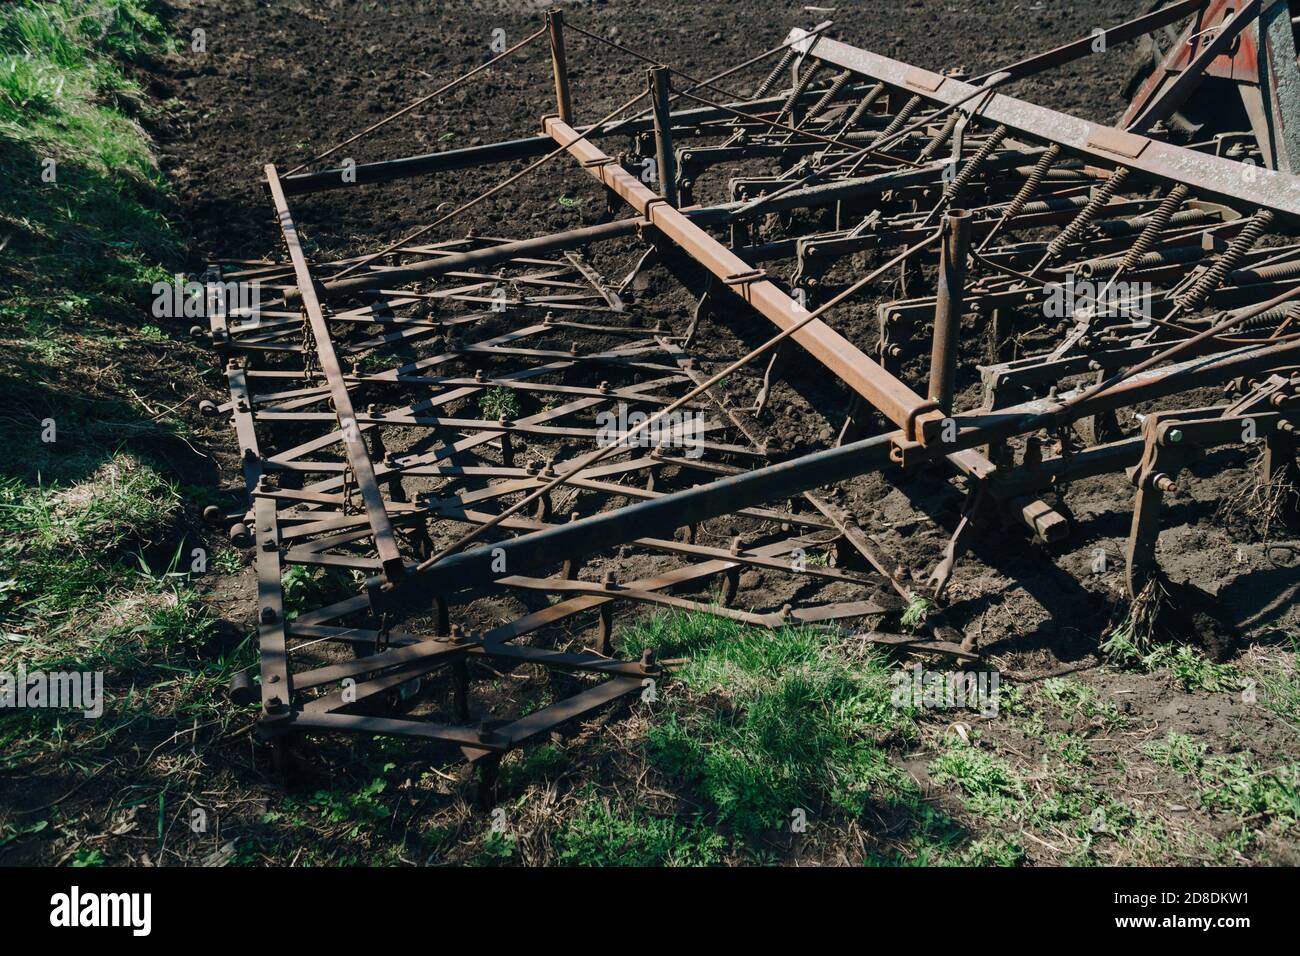 Detalles de un primer plano de tractor antiguo Foto de stock